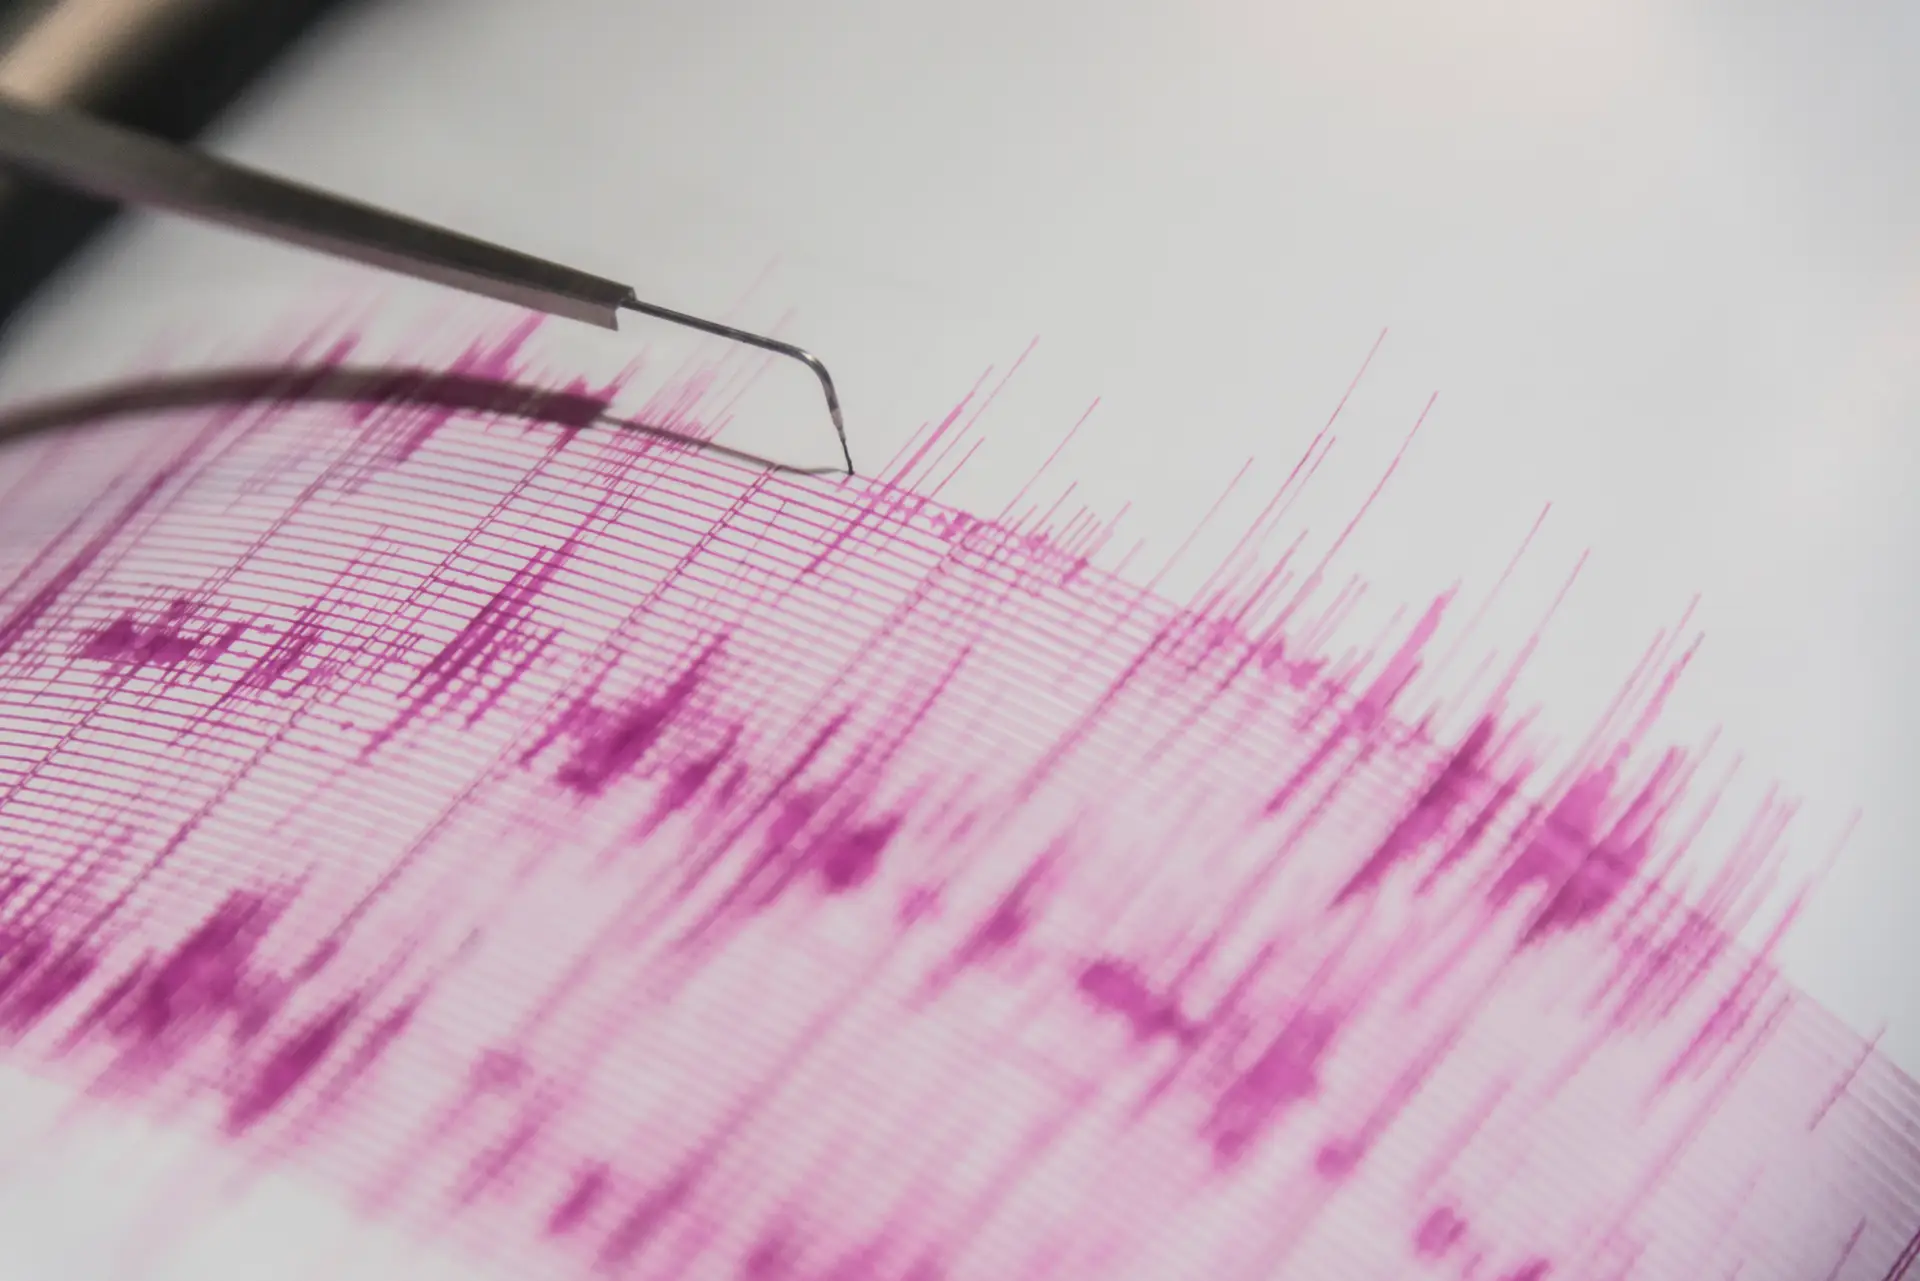 マグニチュード6の地震が日本沿岸を襲う